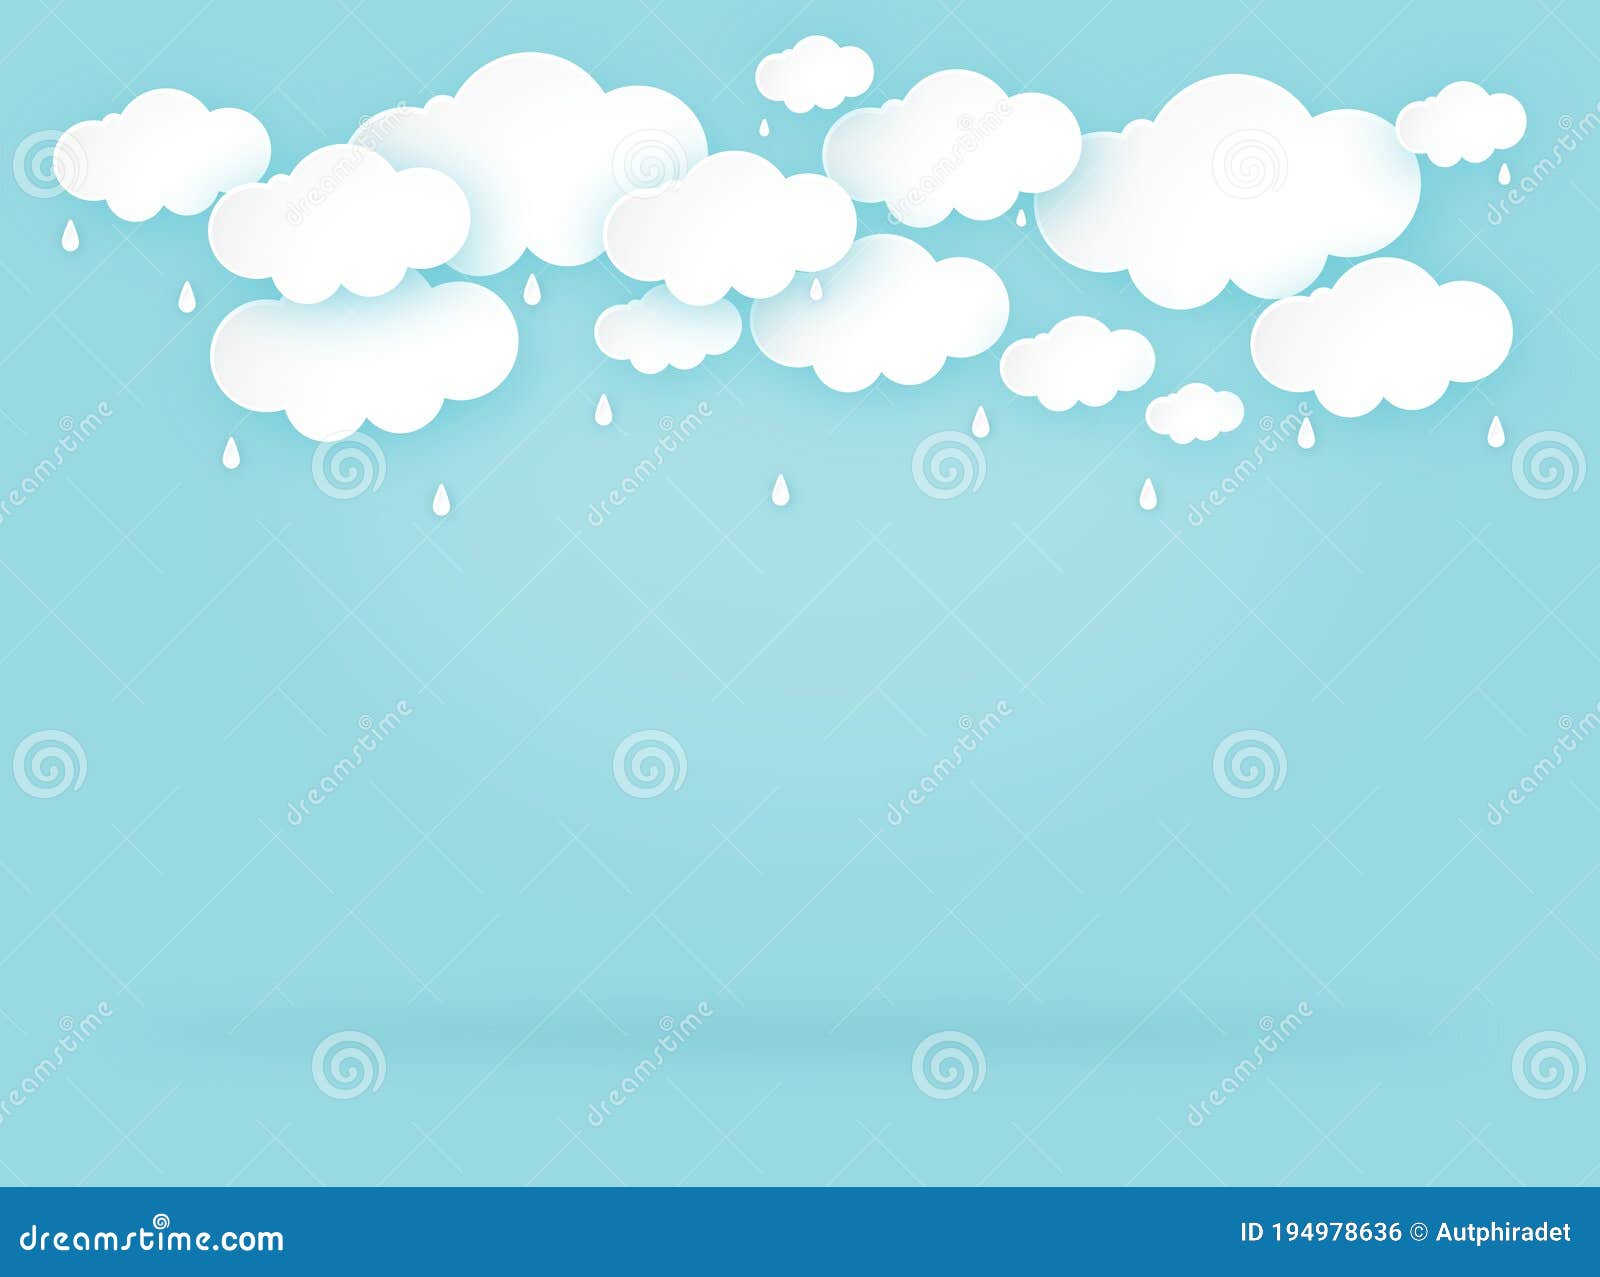 Mưa giông trên nền xanh: Hình ảnh giọt mưa đang rơi trên nền màu xanh xám là một cảnh tượng tuyệt đẹp và thú vị. Hãy để trái tim bạn tan chảy trong âm thanh của mưa gió và giữ chặt máy ảnh để bắt lấy khoảnh khắc đó.